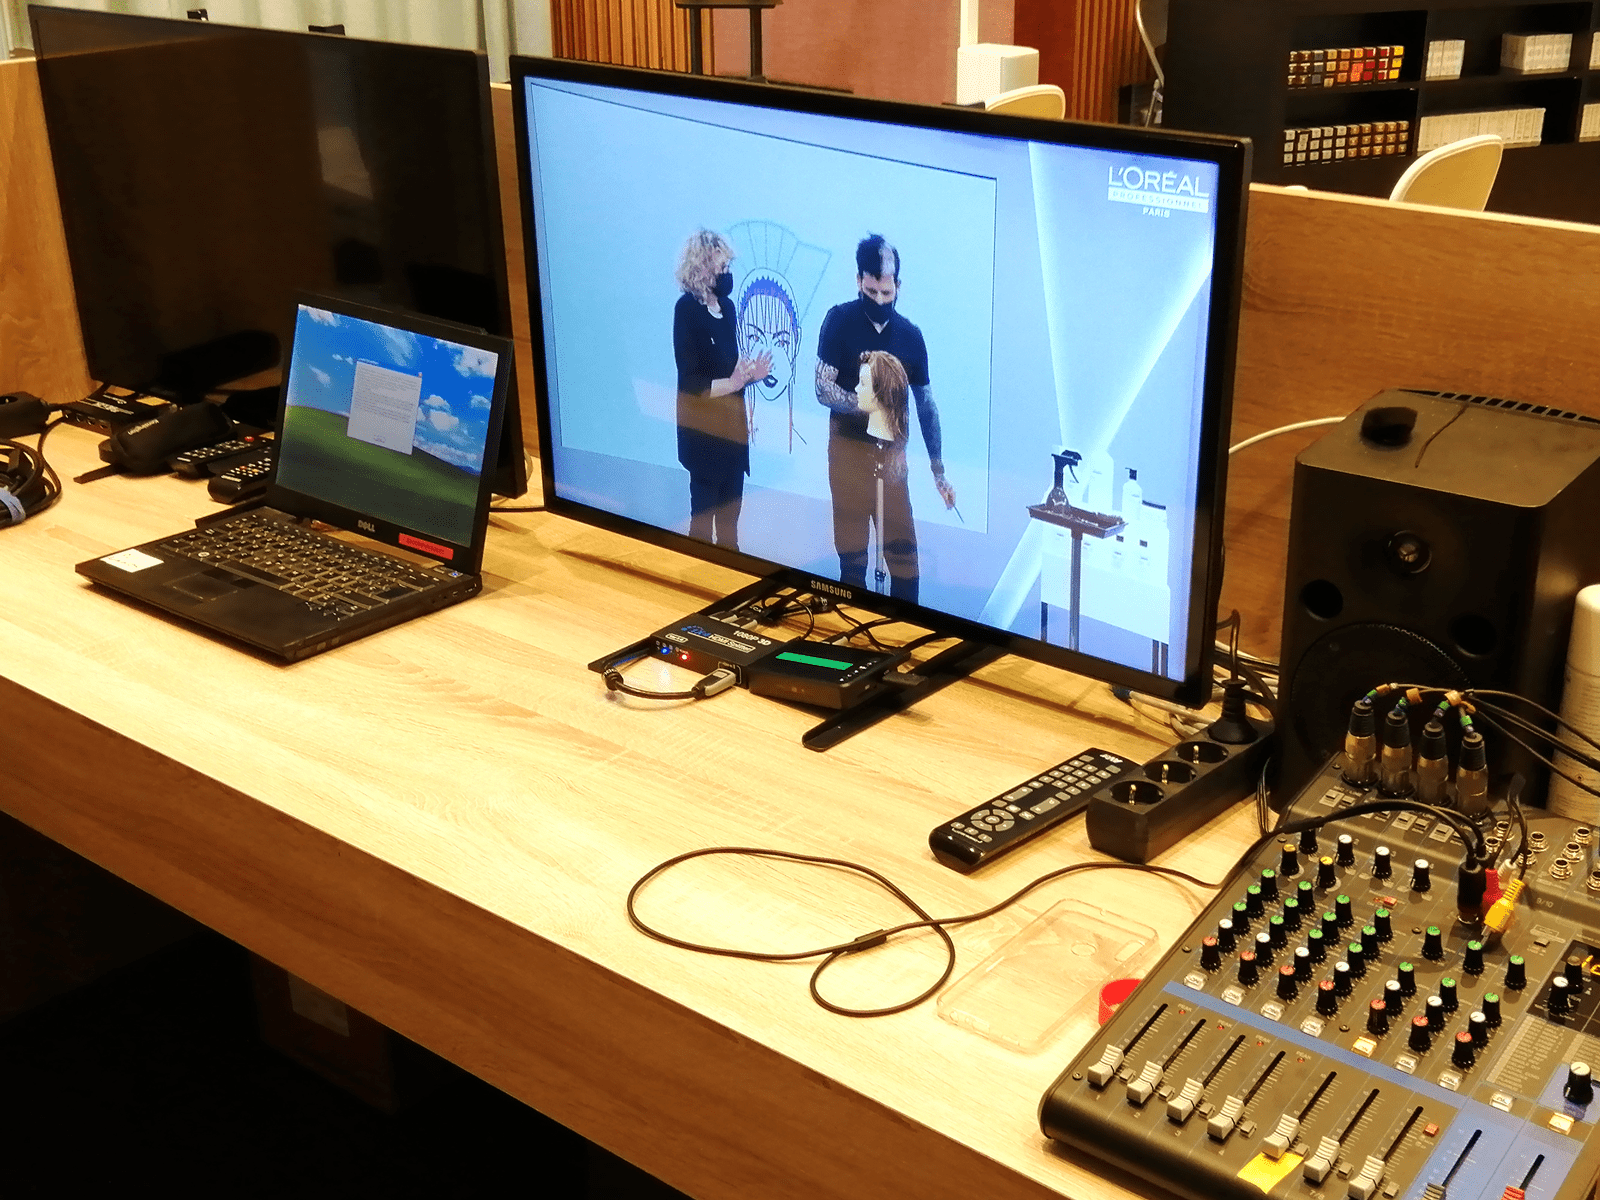 instal·lación equips videoconferencia - instalación equipos de videoconferencia